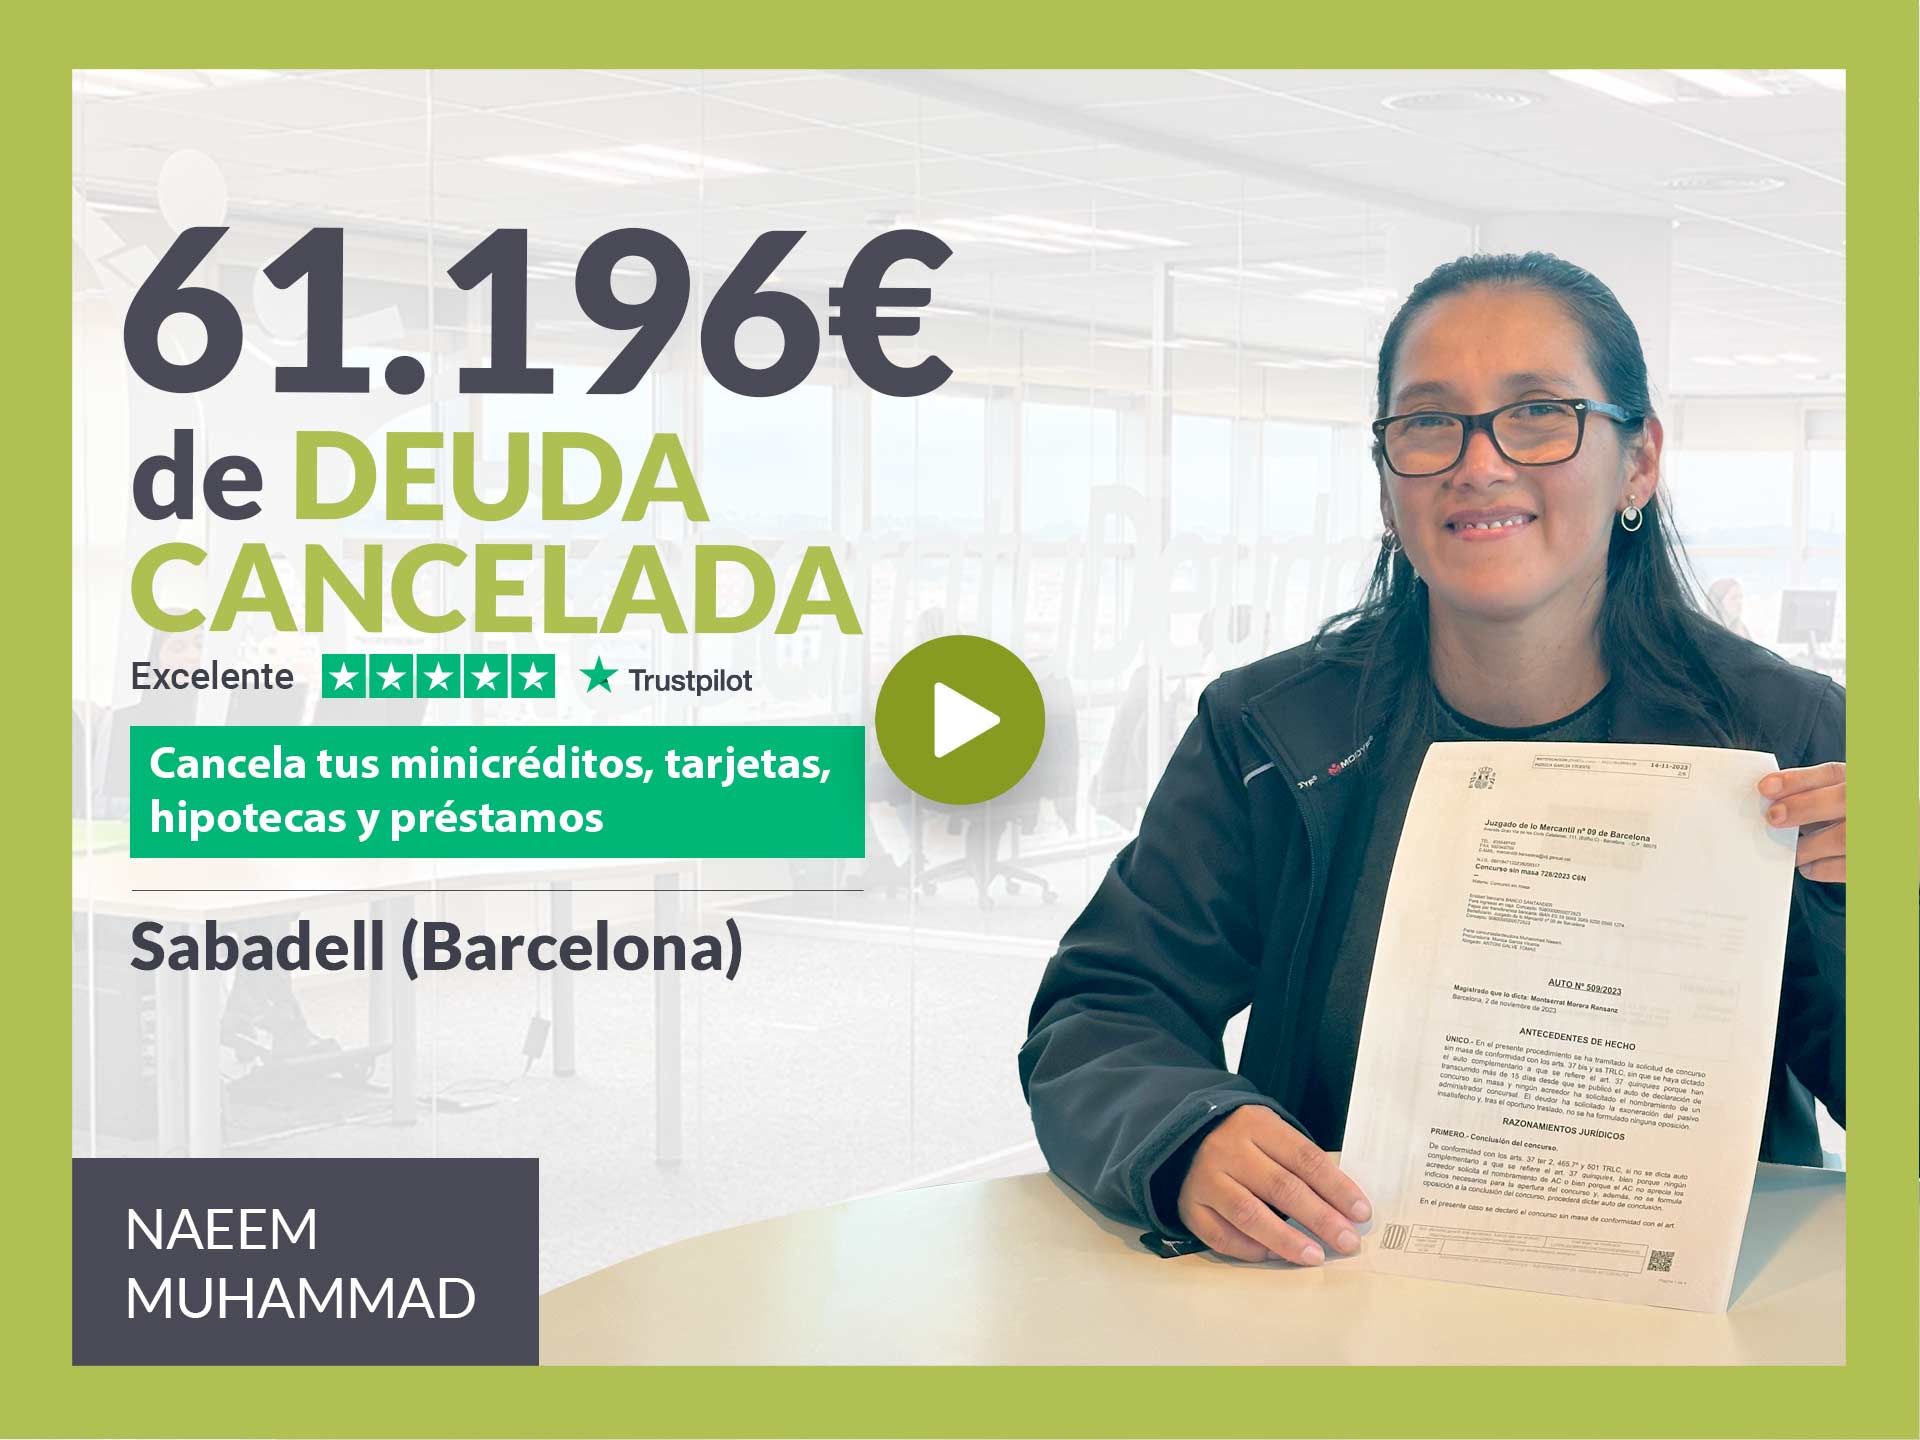 Repara tu Deuda Abogados cancela 61.196? en Sabadell (Barcelona) con la Ley de Segunda Oportunidad